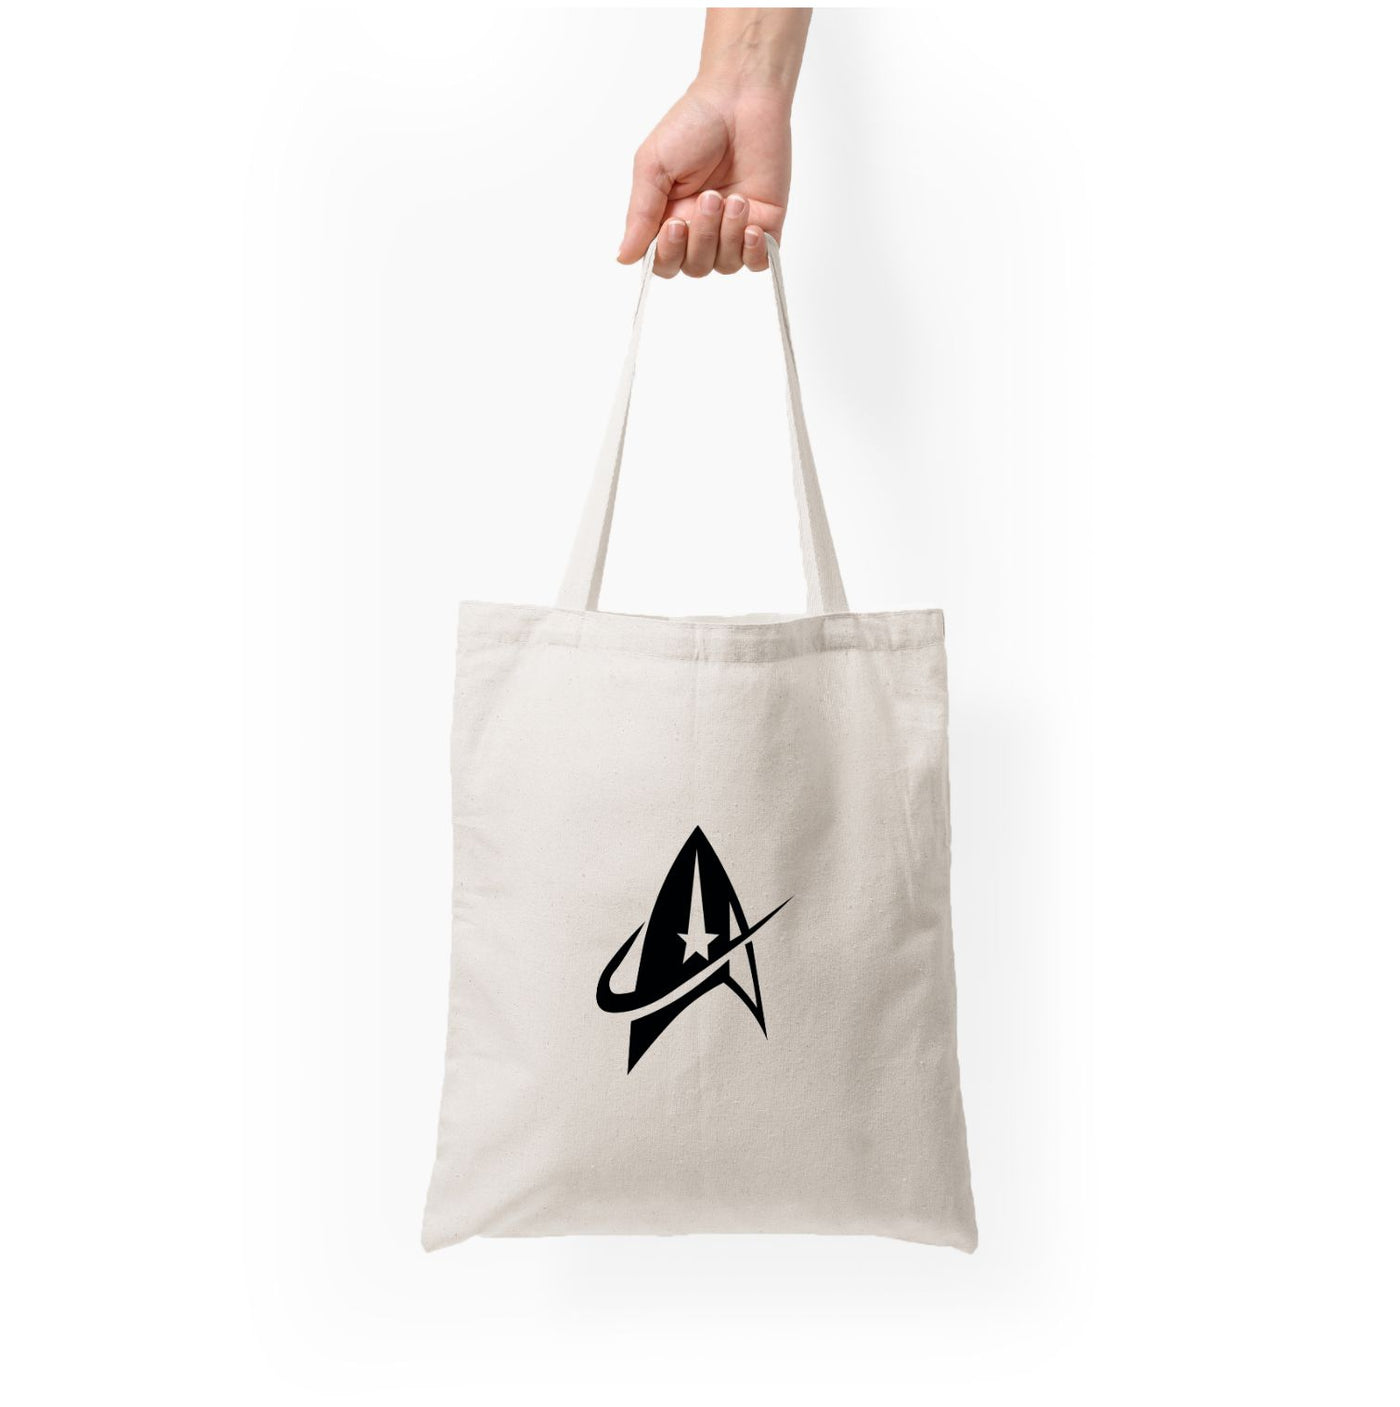 Logo - Star Trek Tote Bag